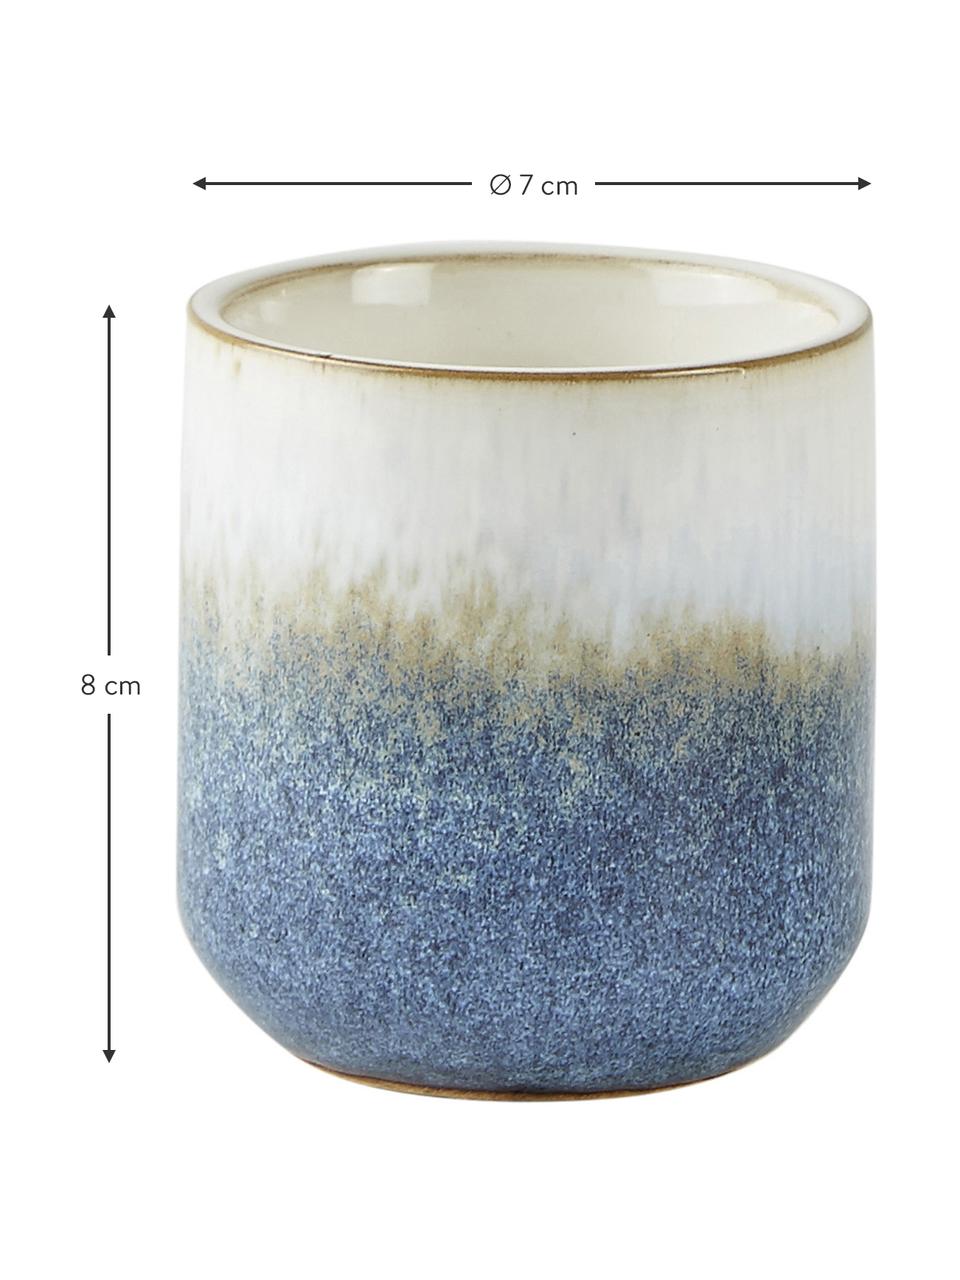 Duftkerze Sea Salt (Kokosnuss & Meersalz), Behälter: Keramik, Kokosnuss & Meersalz, Ø 7 x H 8 cm